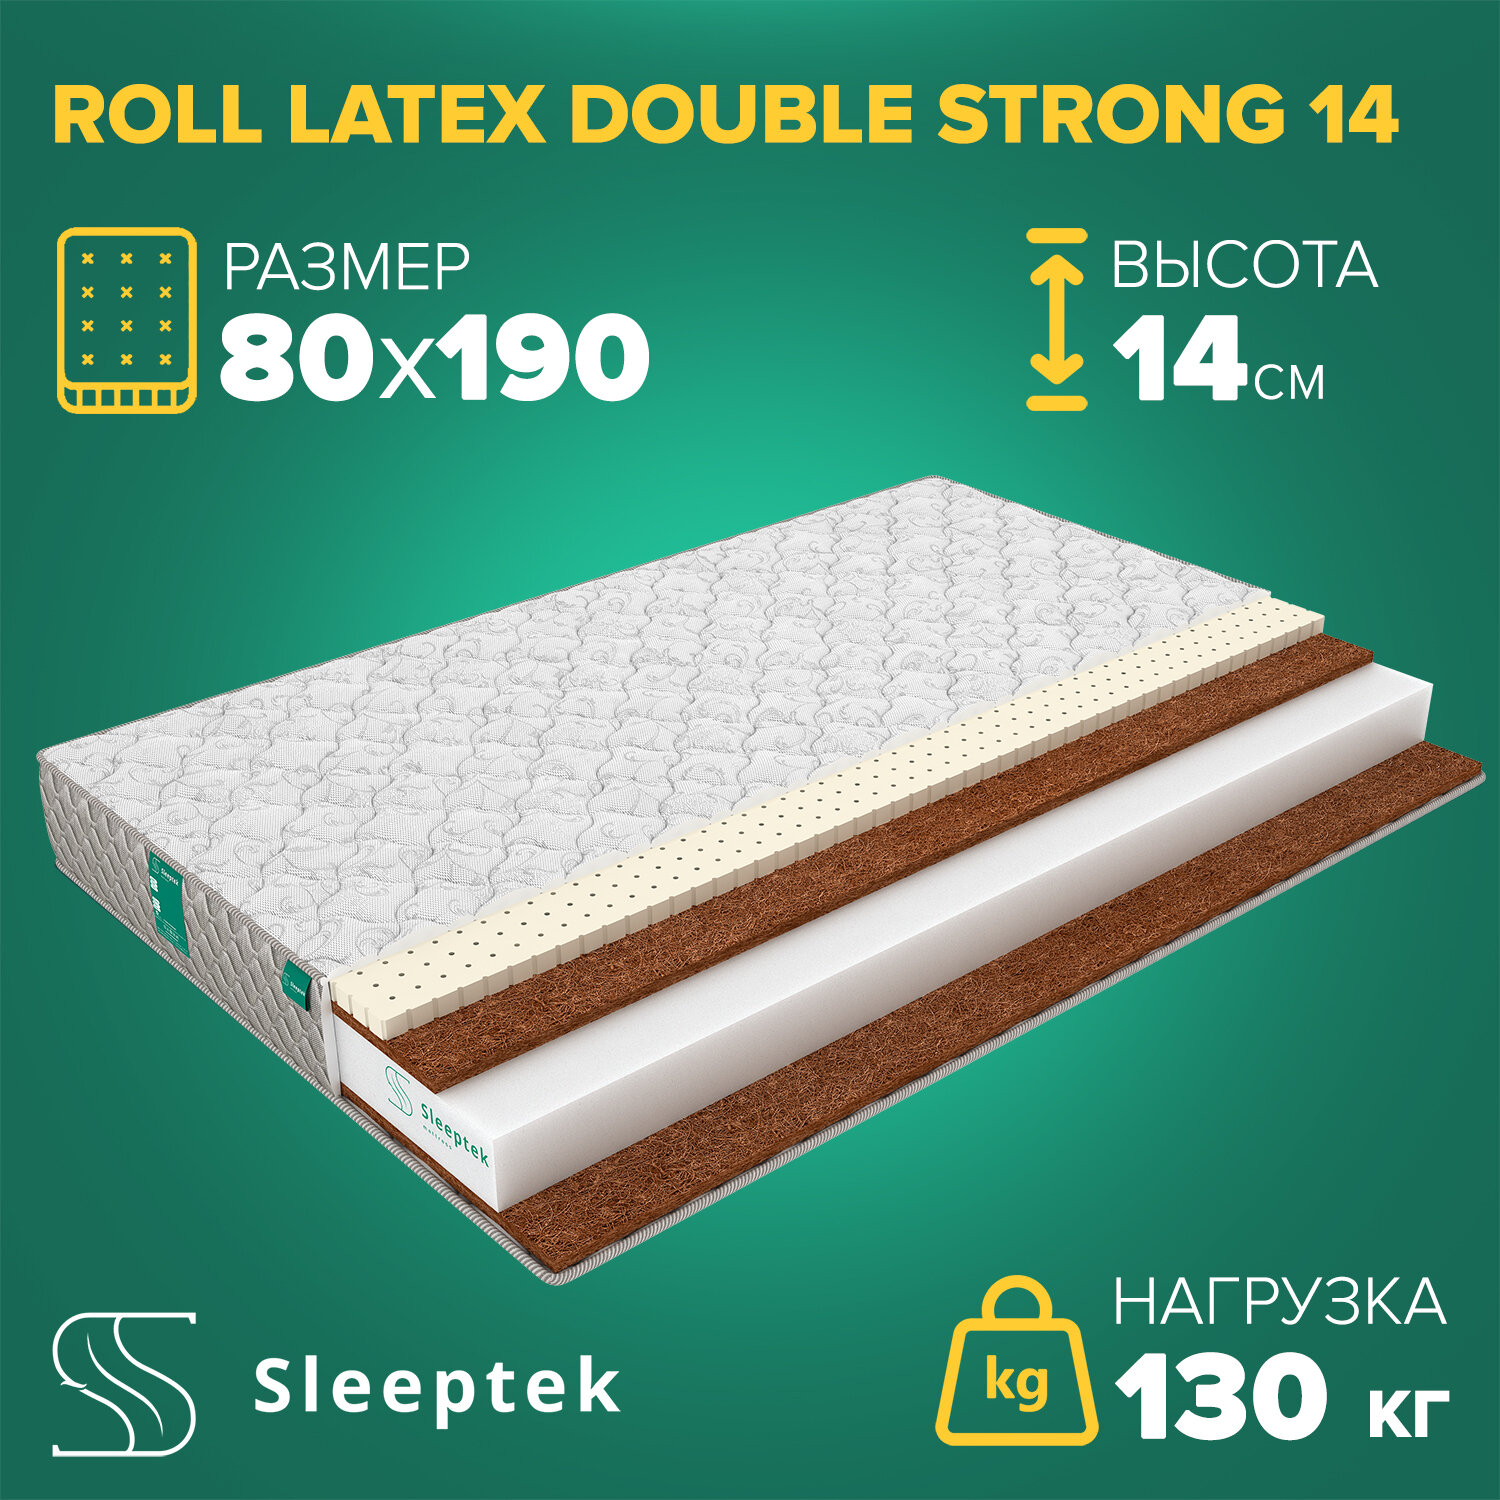 Матрас Sleeptek Roll Latex DoubleStrong 14 80х190